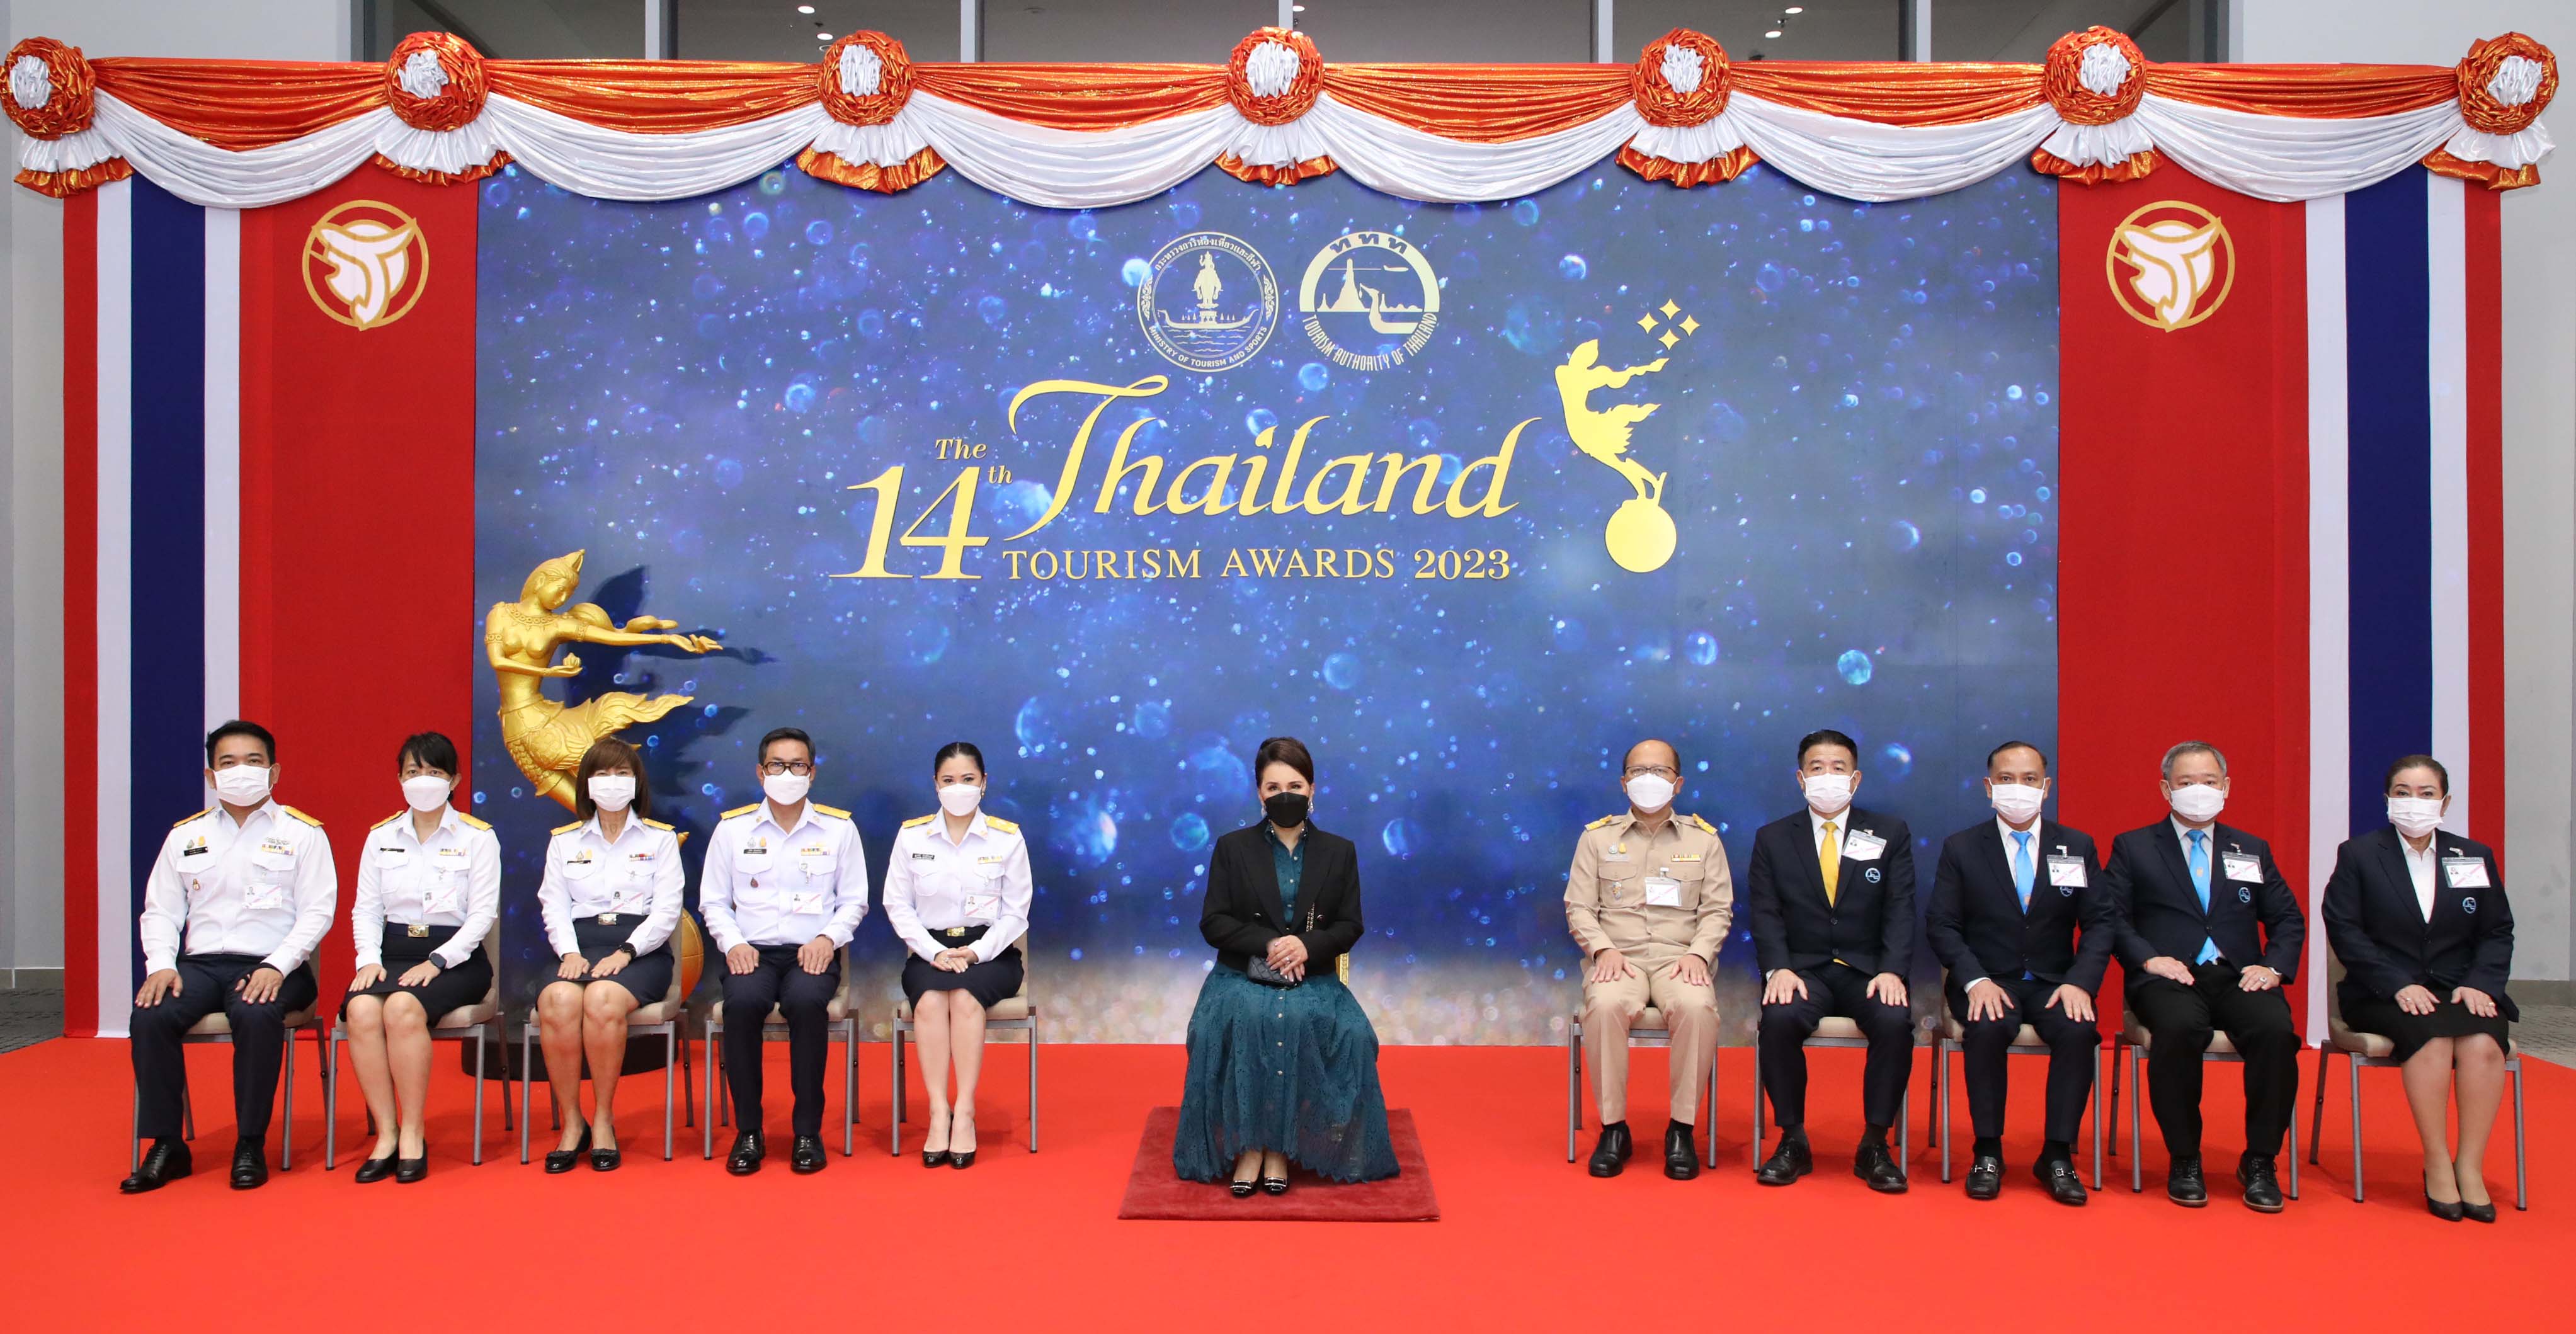 ททท. จัดพิธีพระราชทานรางวัลอุตสาหกรรมท่องเที่ยวไทย (Thailand Tourism Awards) ครั้งที่ 14​ ตอกย้ำยกระดับห่วงโซ่อุปทานสู่มาตรฐานความยั่งยืน